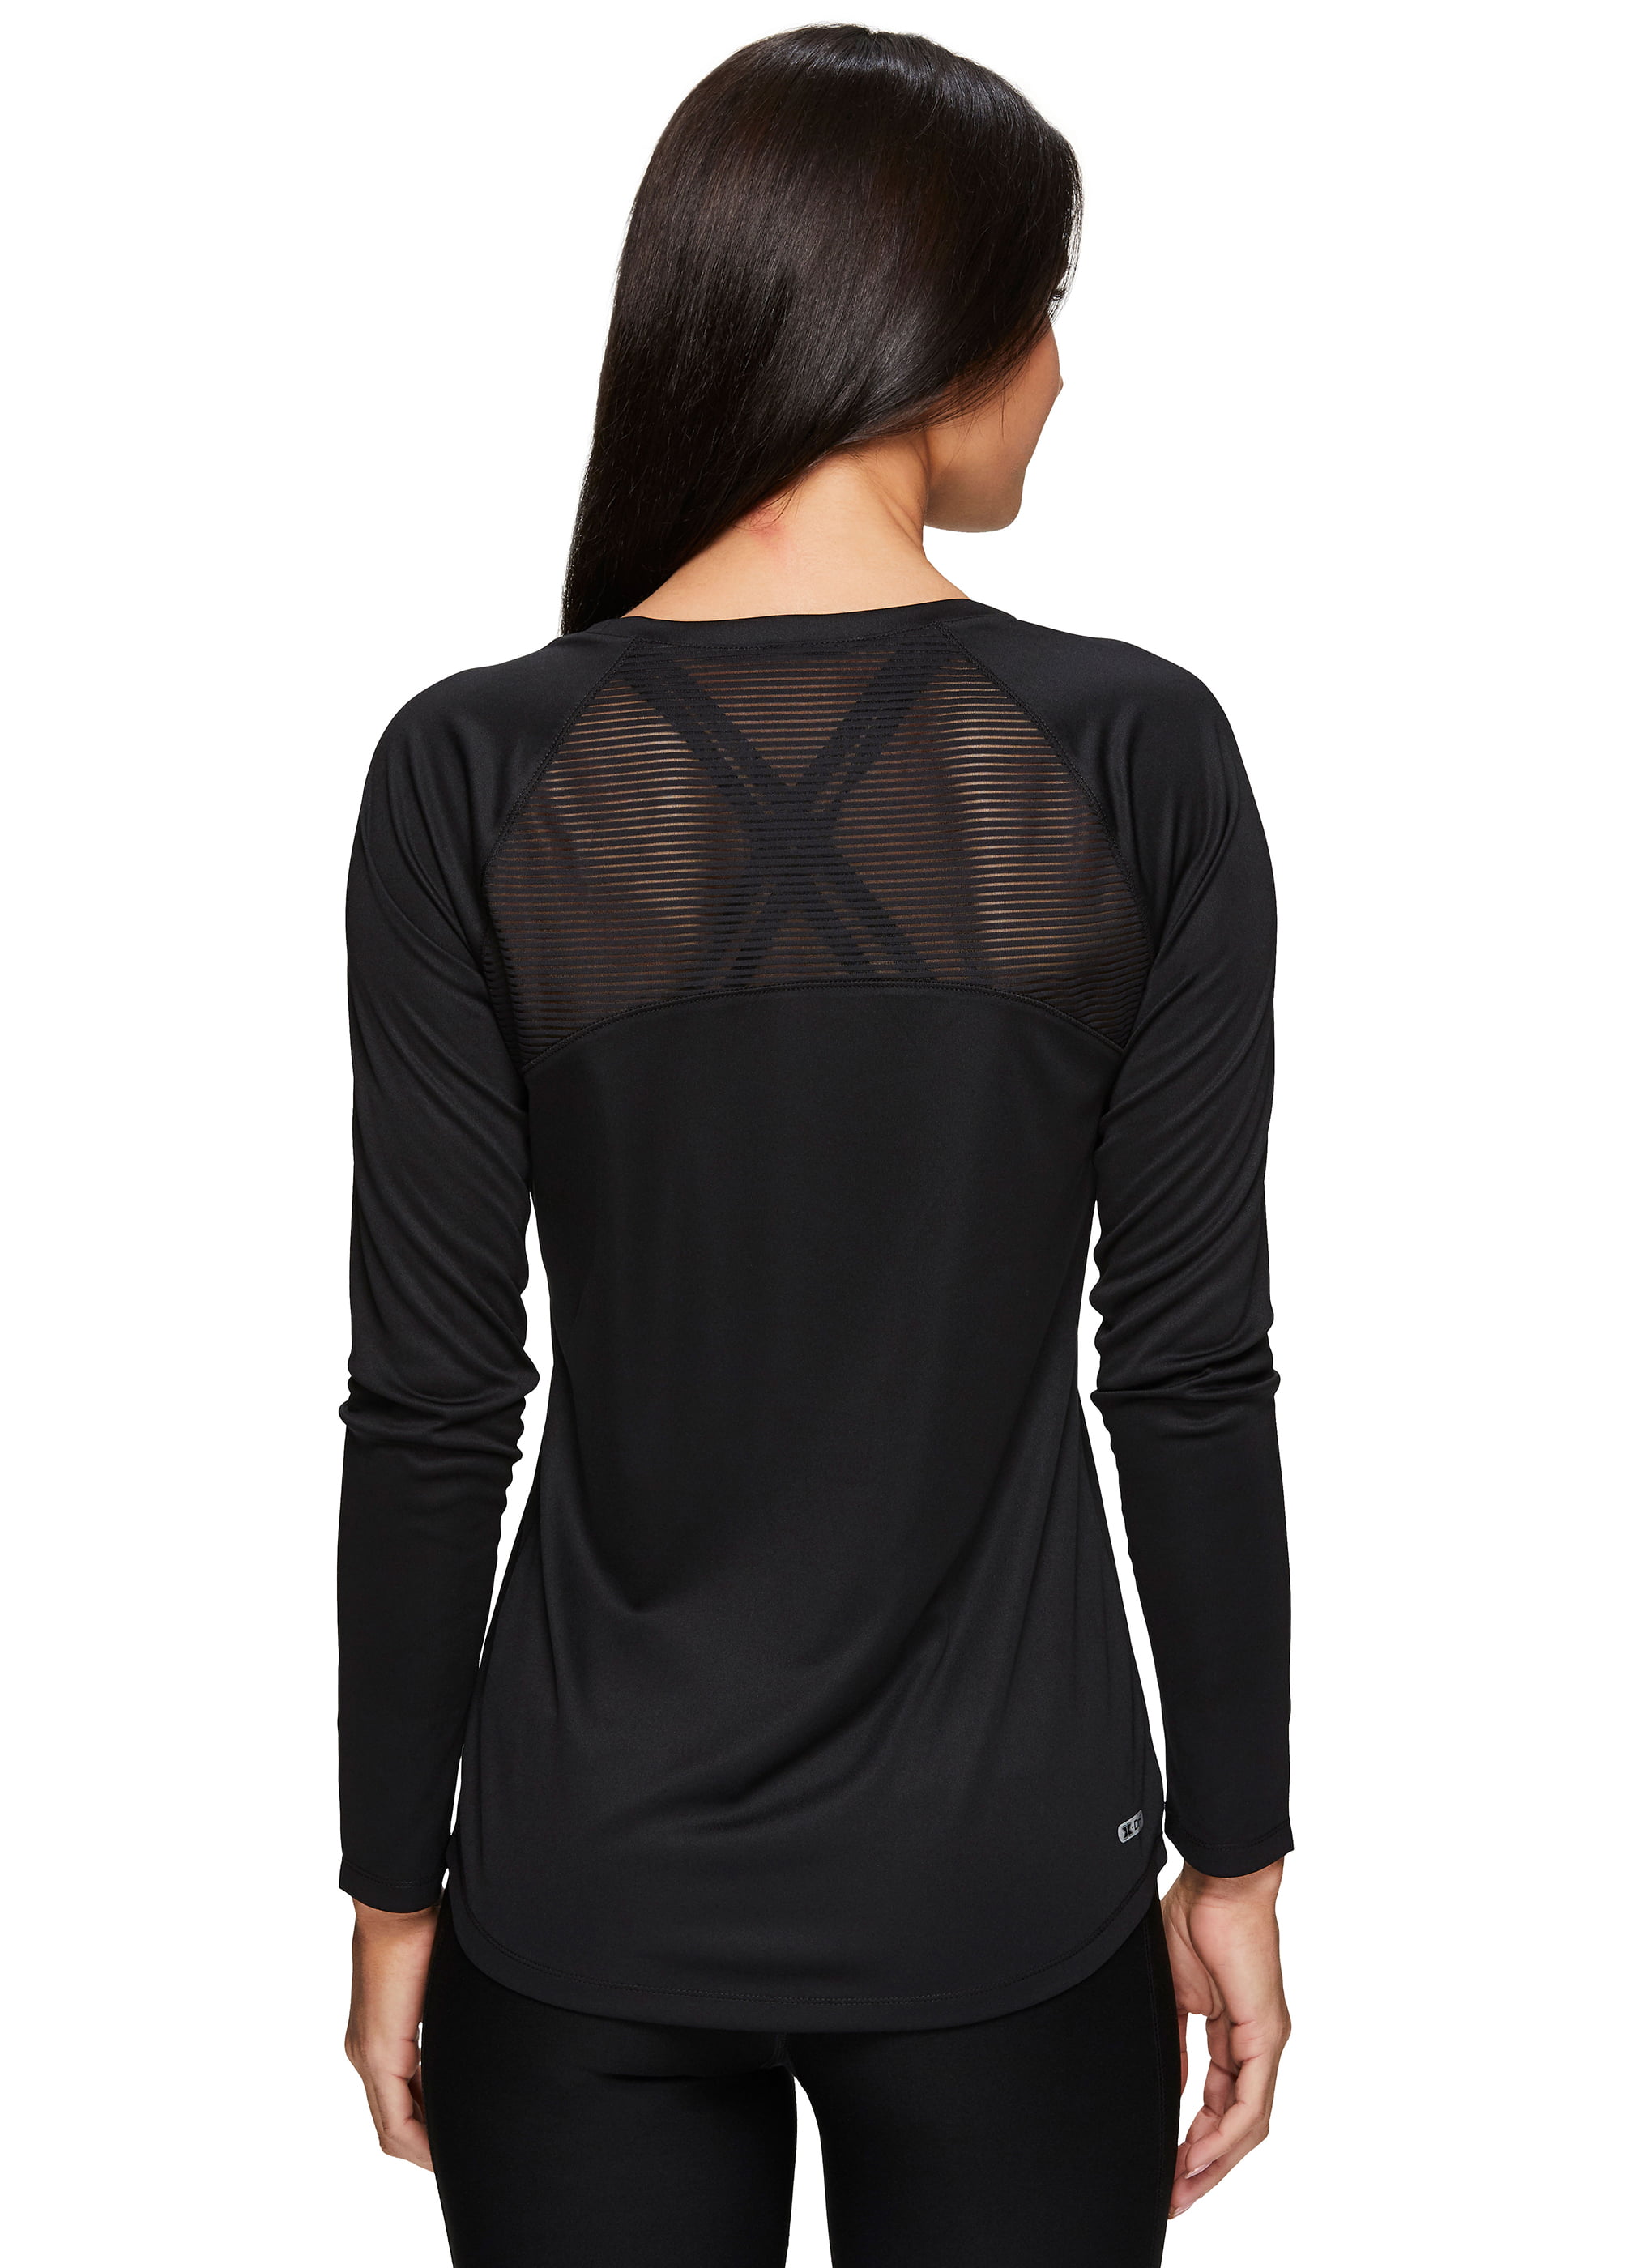 RBX Active Women's Running Workout Long Sleeve T-Shirt Multi S19 Black XL 